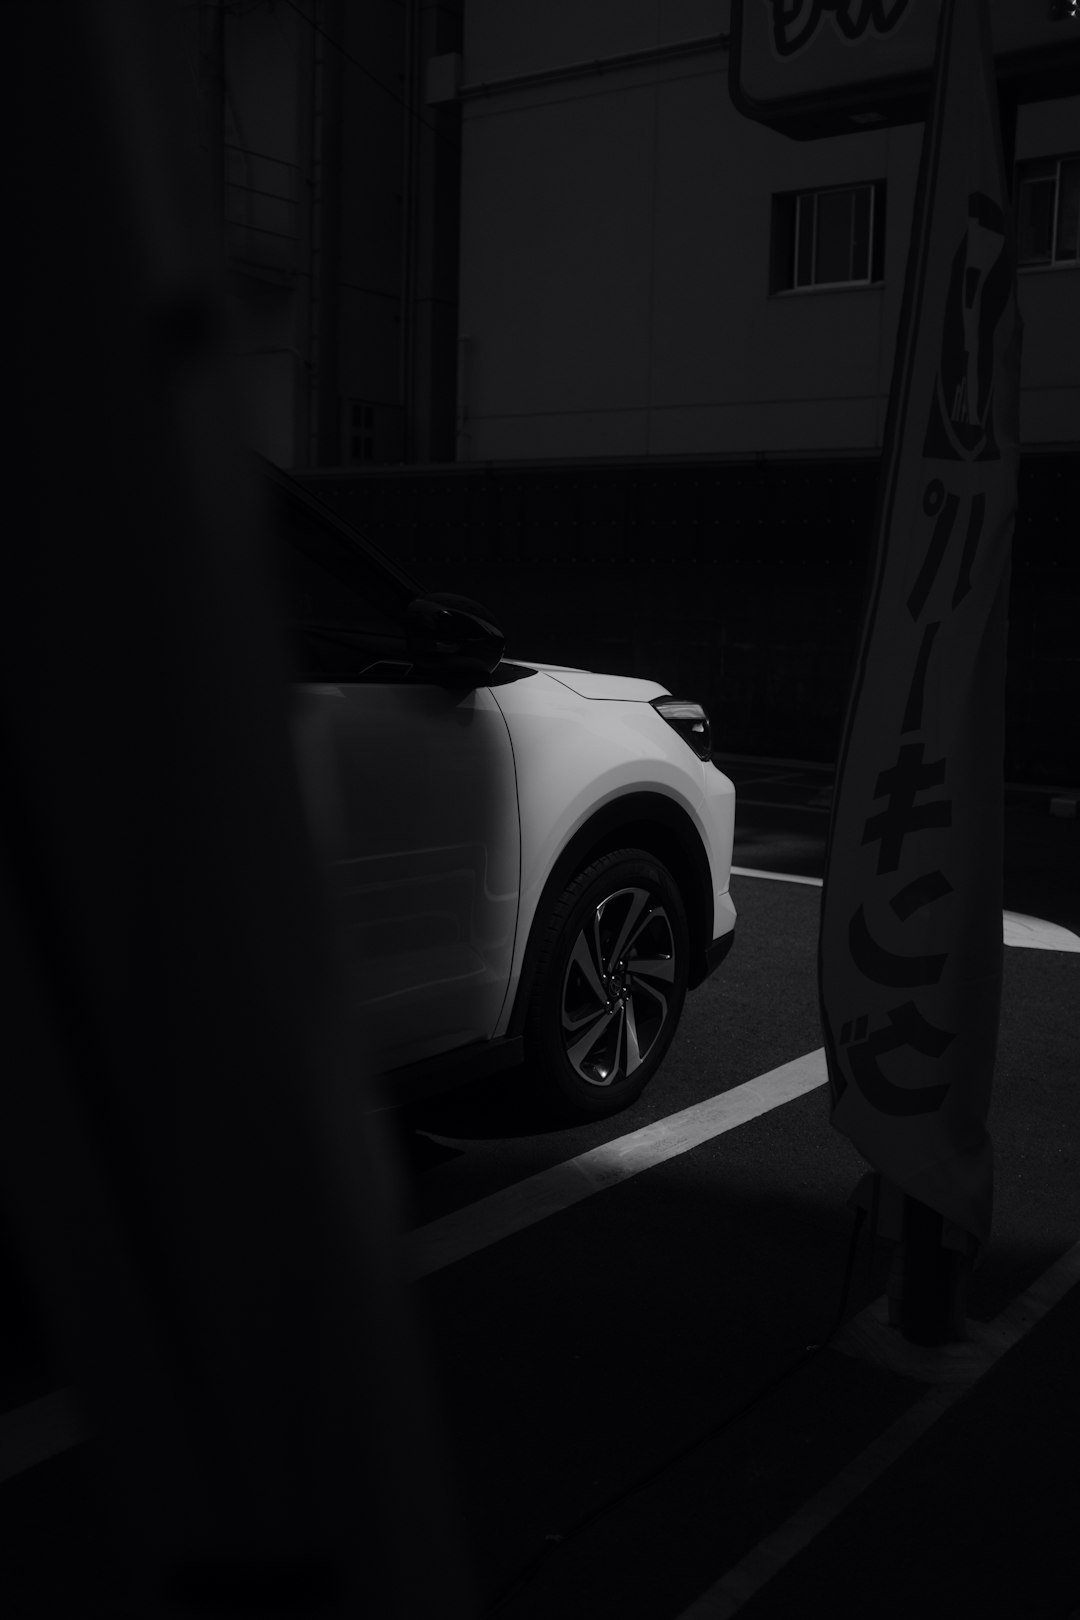 white car in a dark room